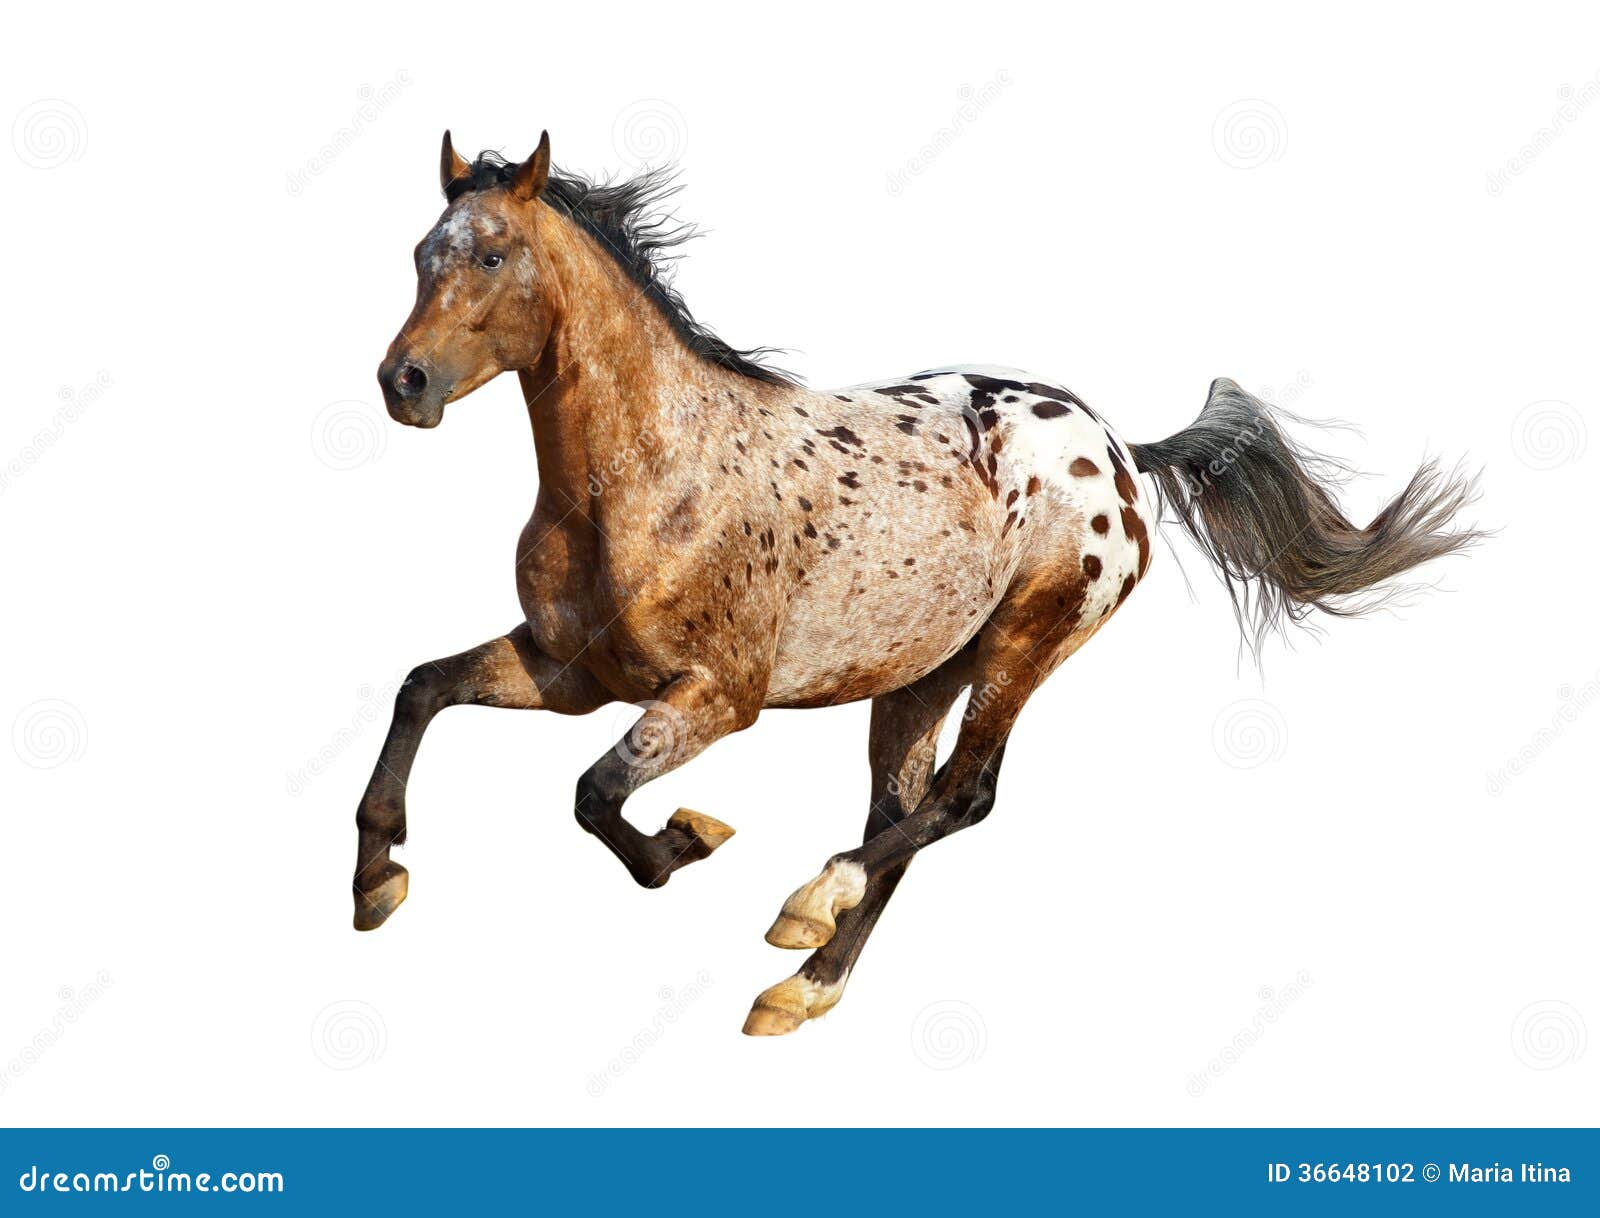 Stock Horse Stallion, Bay Appaloosa